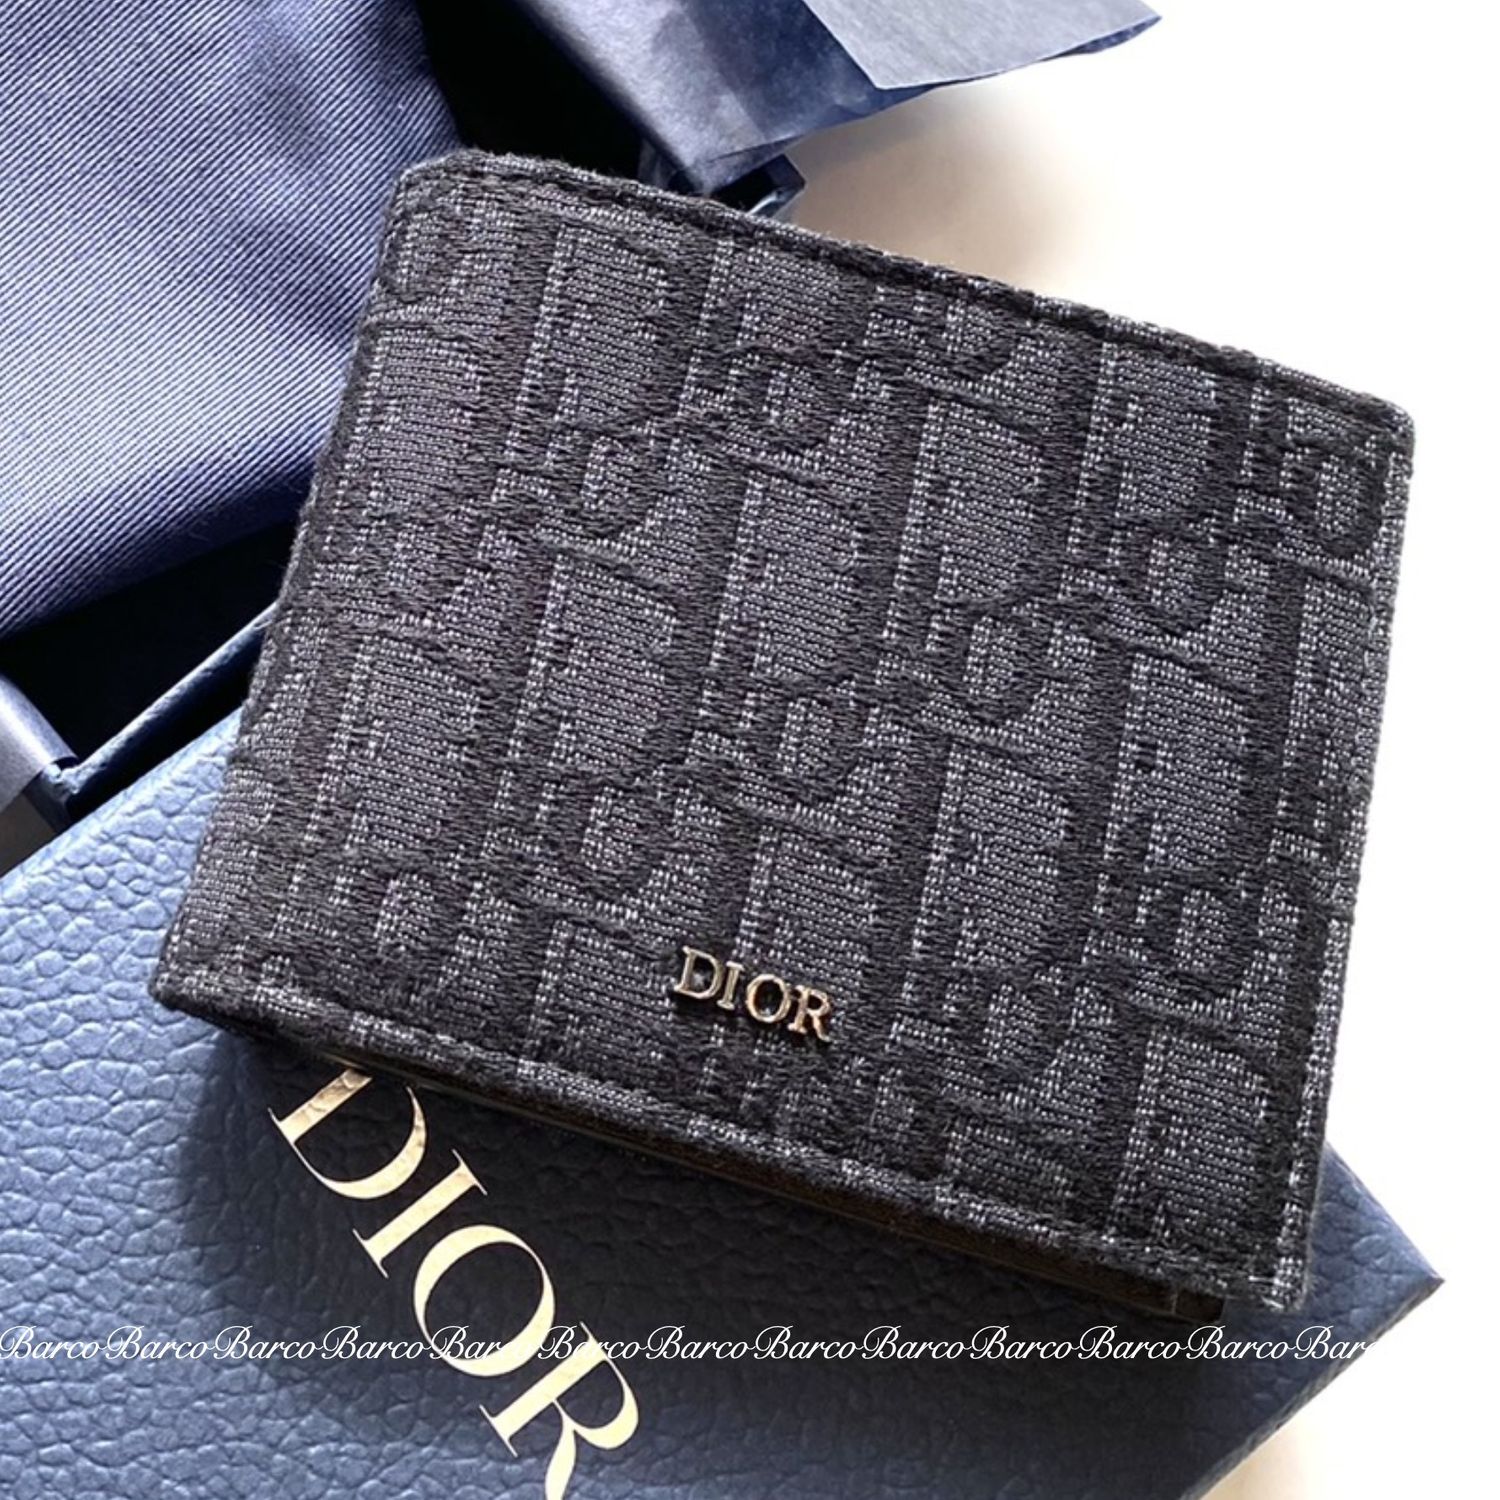 その他注意事項【値下げしました】Dior 折りたたみ財布 メンズ - 折り財布